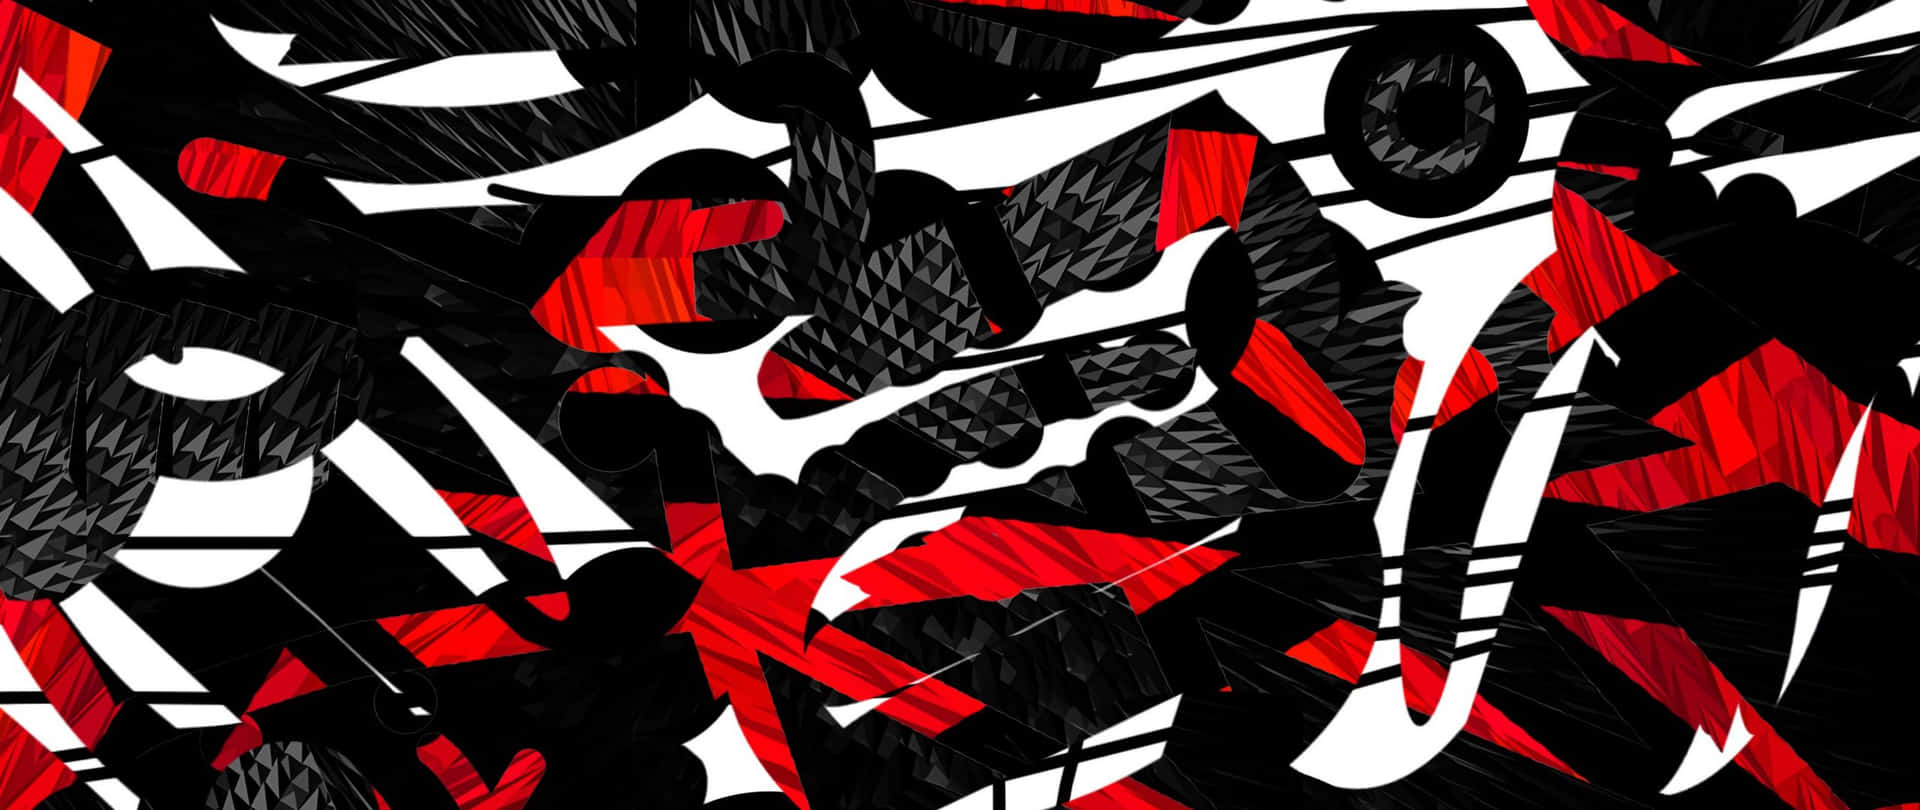 Energetisk rød hvid og sort abstrakt kunst tapet Wallpaper